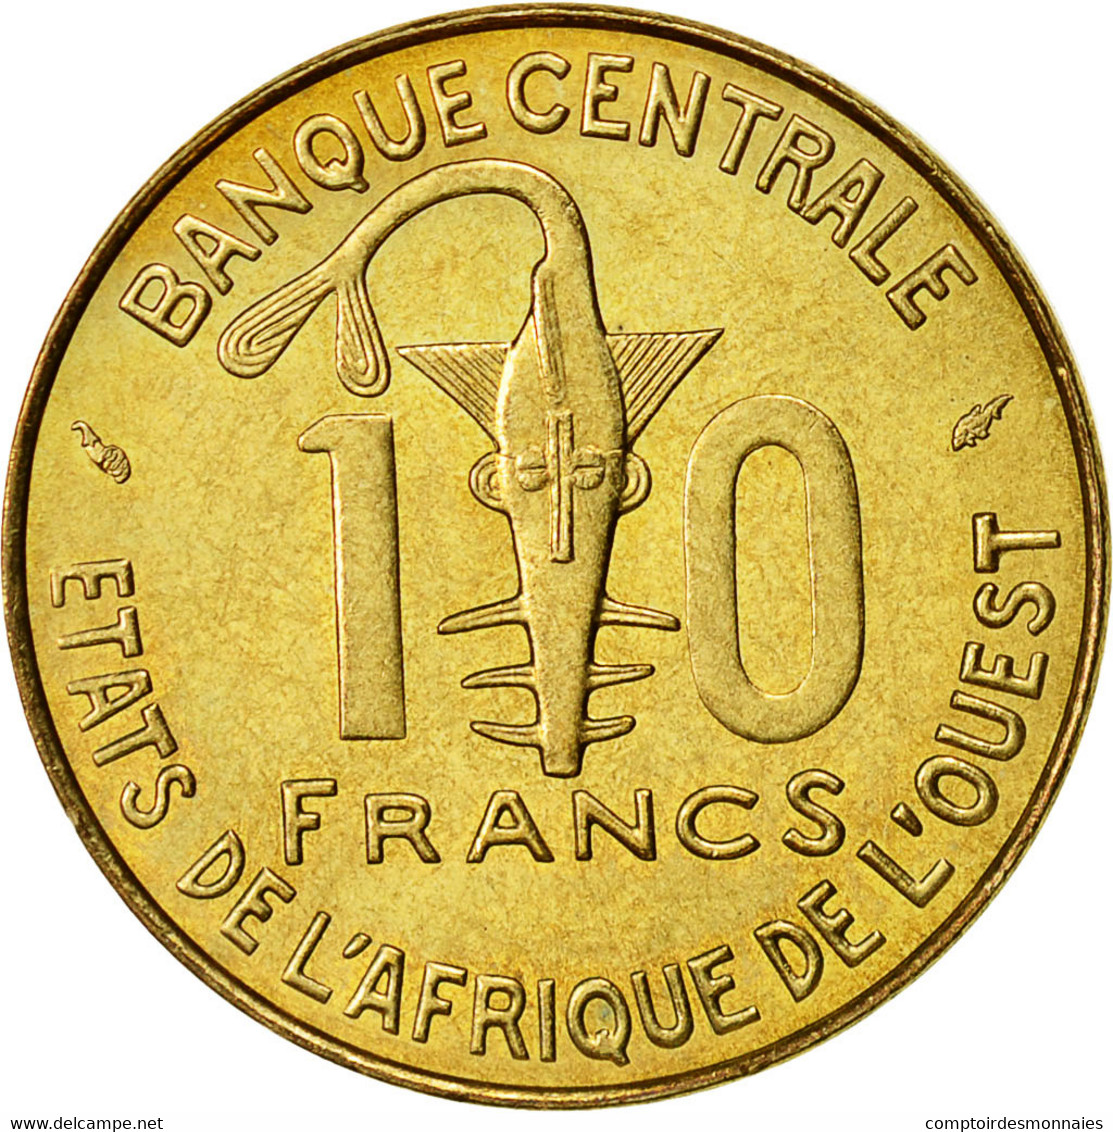 Monnaie, West African States, 10 Francs, 1976, SUP, Aluminum-Nickel-Bronze - Elfenbeinküste